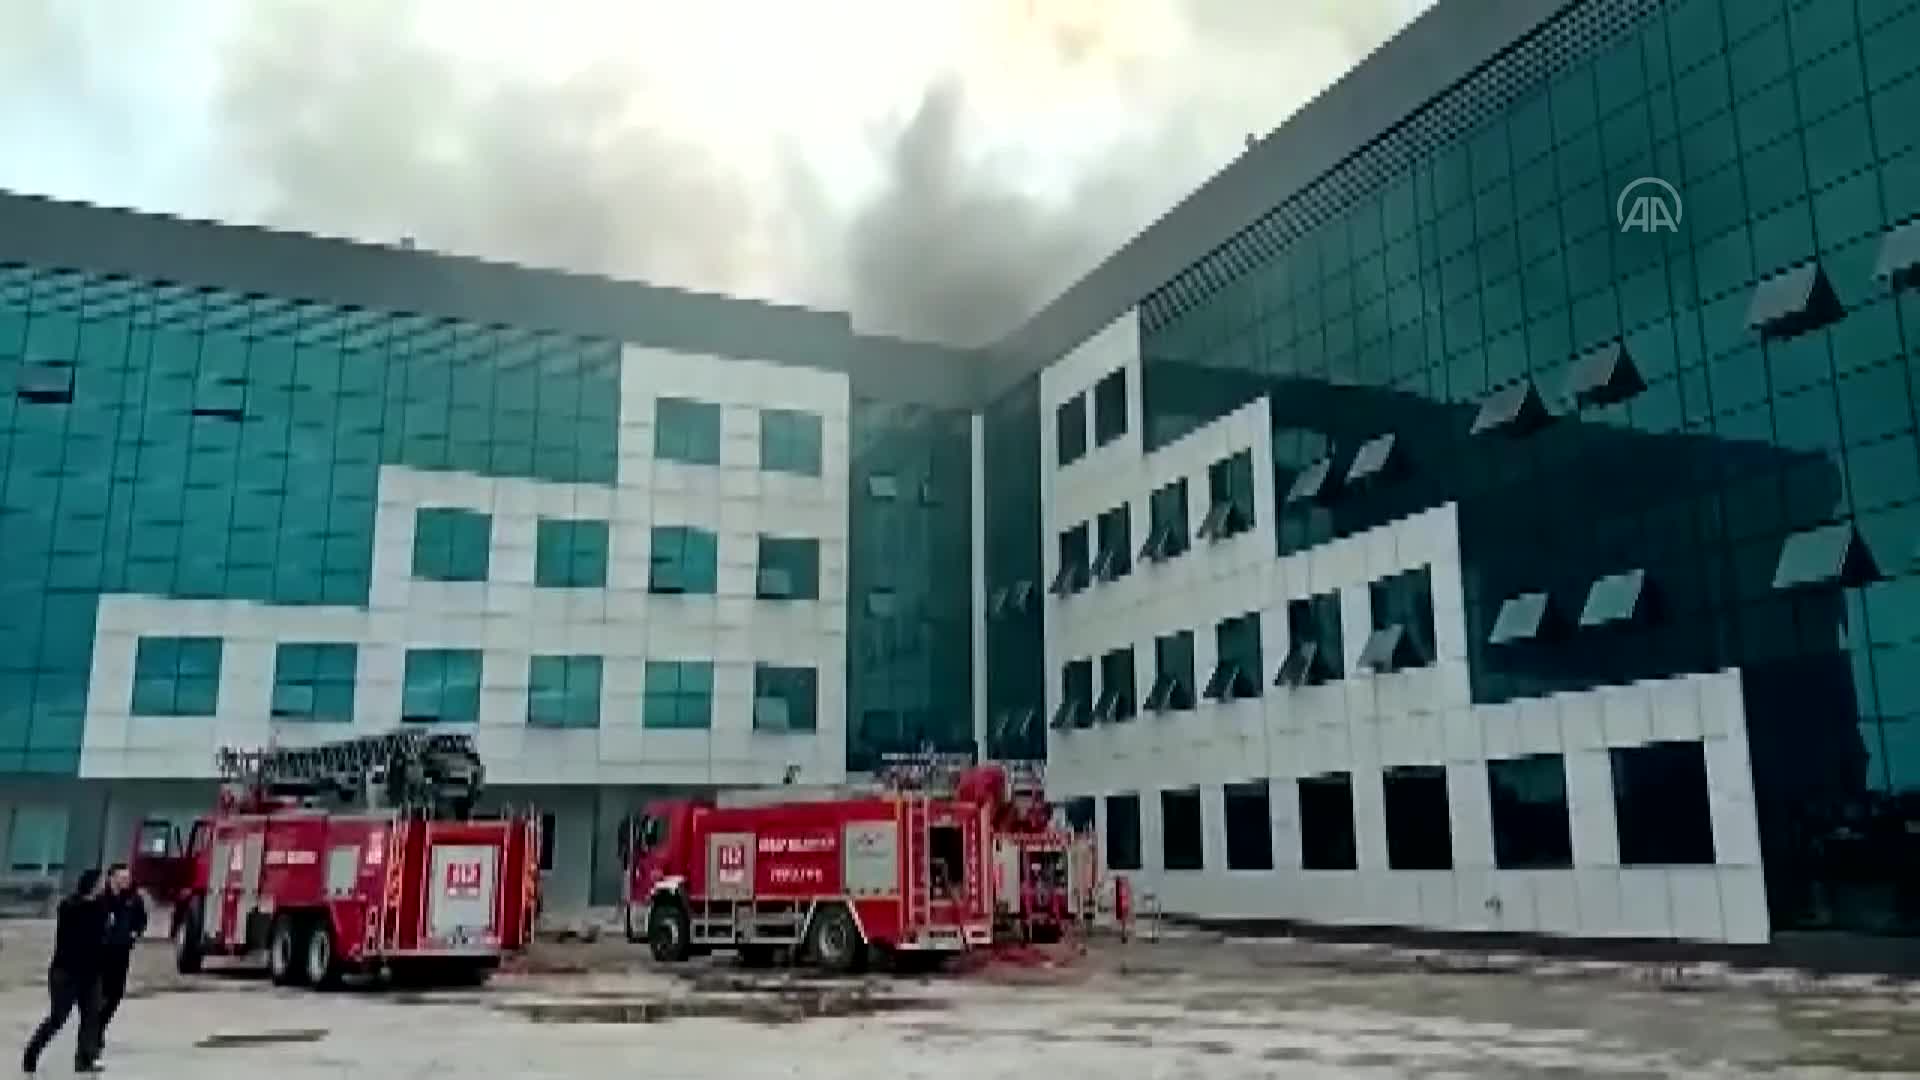 GÜNCELLEME – Giresun Üniversitesi Turizm Fakültesi binasının çatısında çıkan yangın kontrol altına alındı